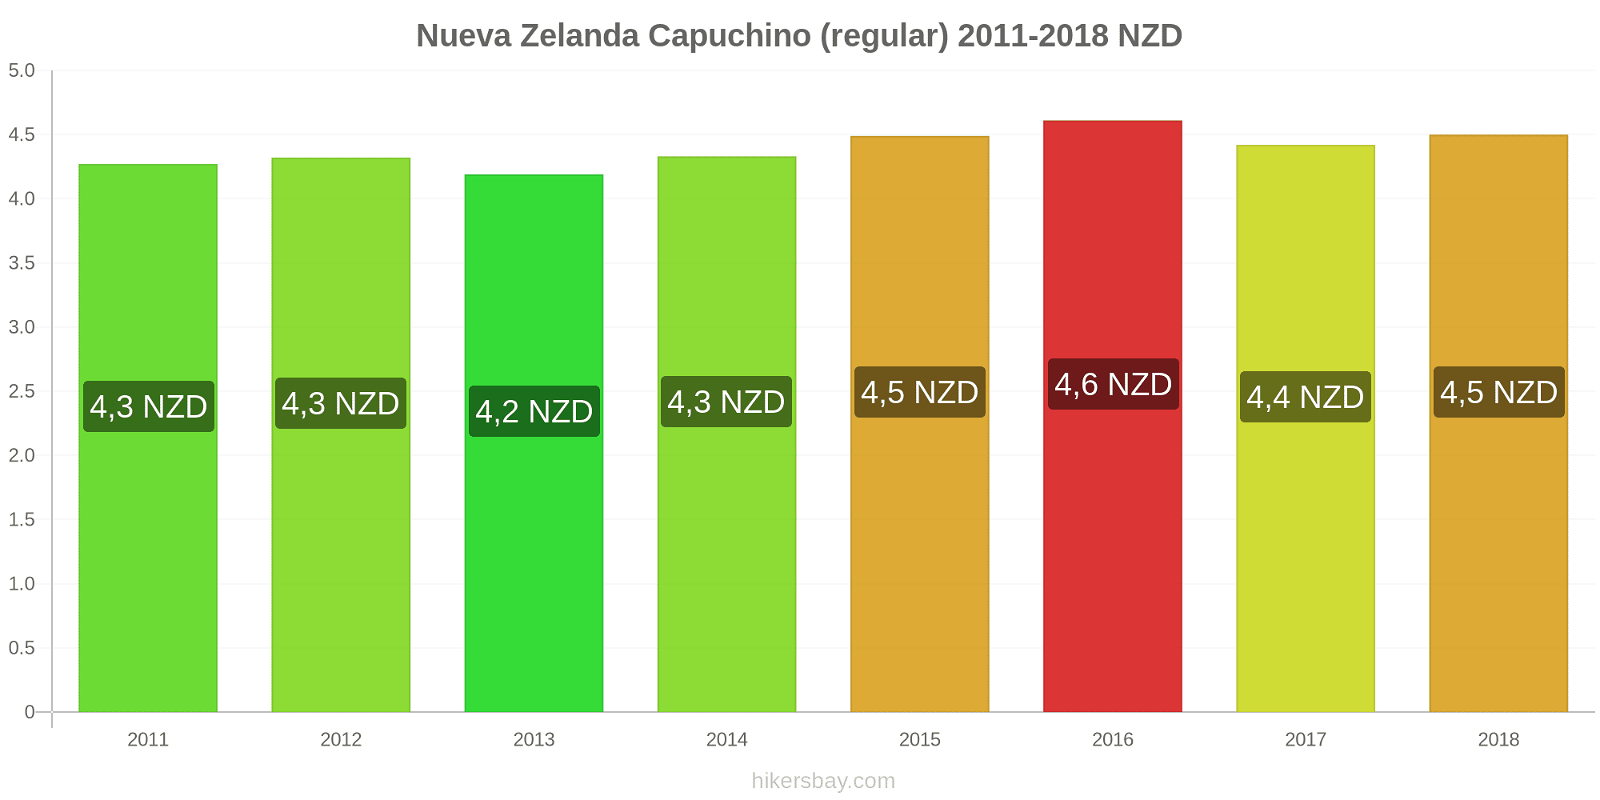 Nueva Zelanda cambios de precios Cappuccino hikersbay.com